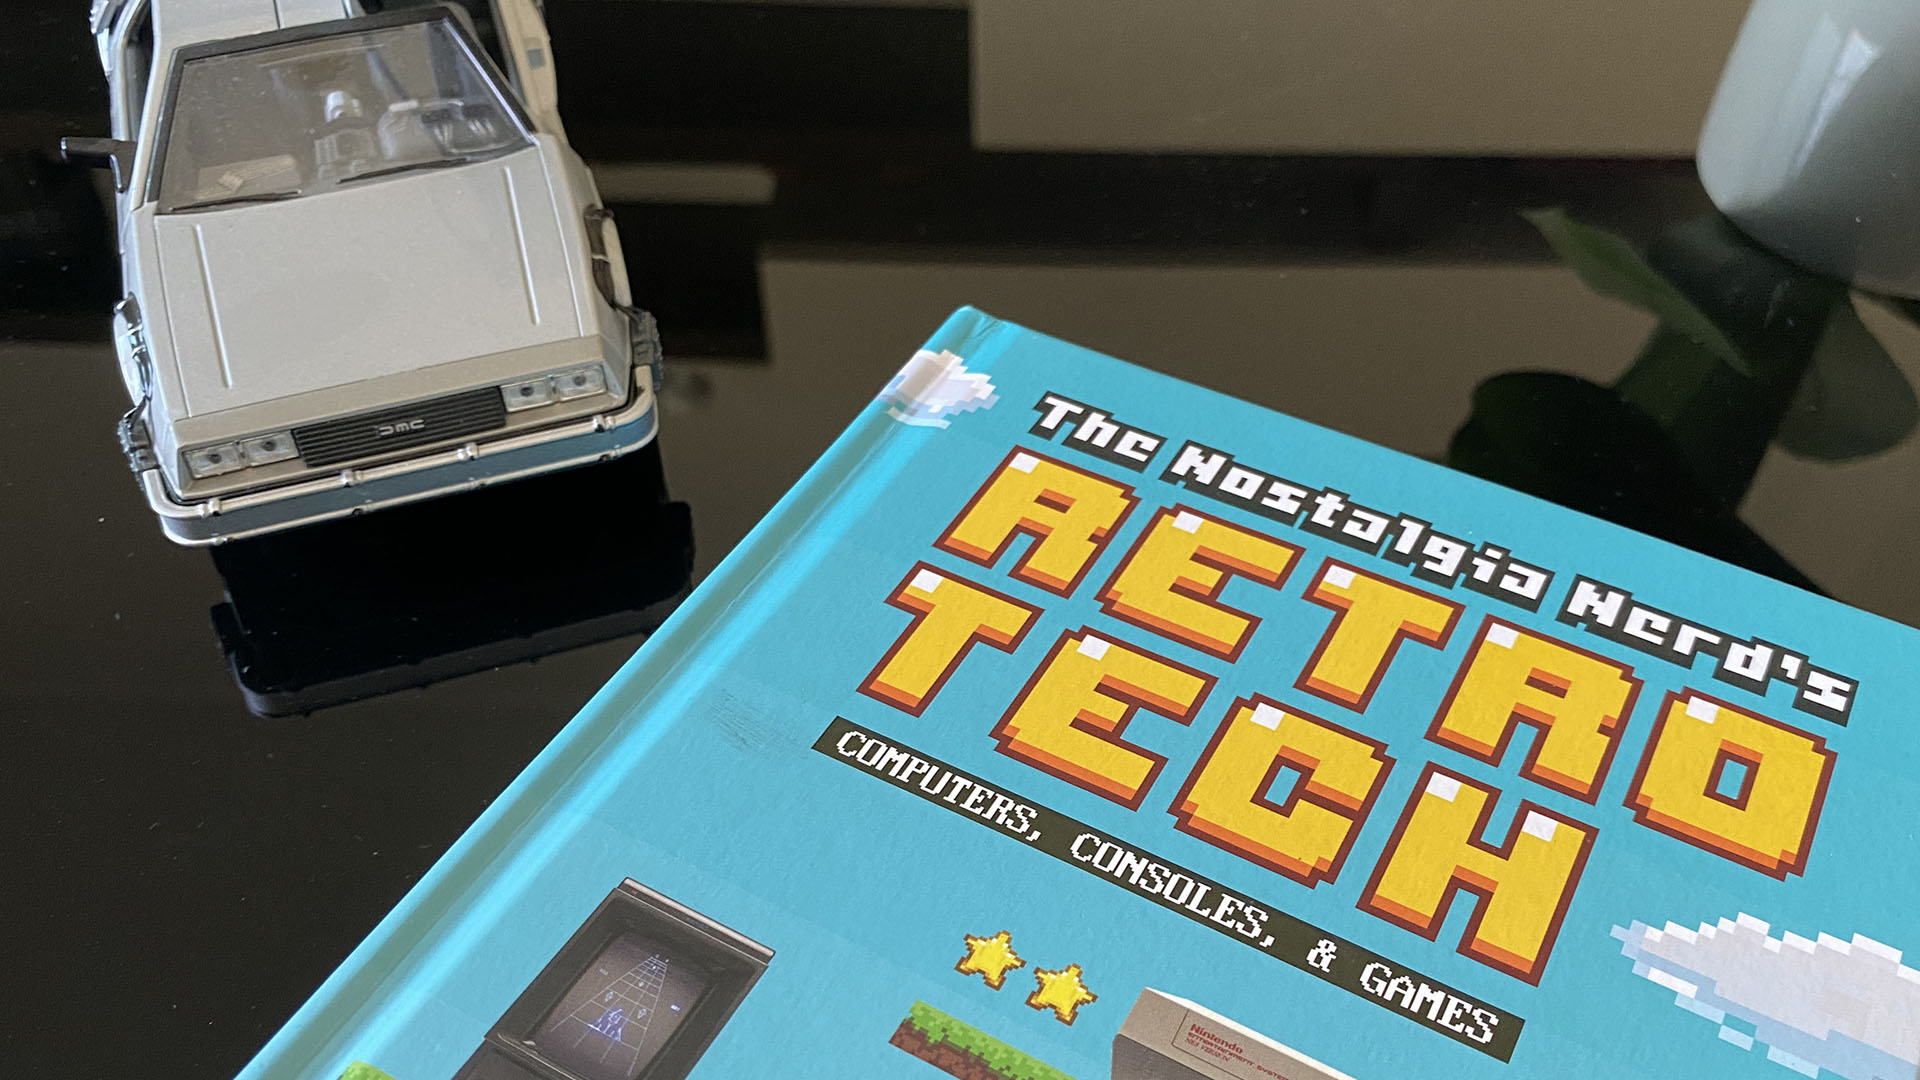 Recensione--The-Nostalgia-Nerds-Retro-Tech--Computer-Consoles--Games